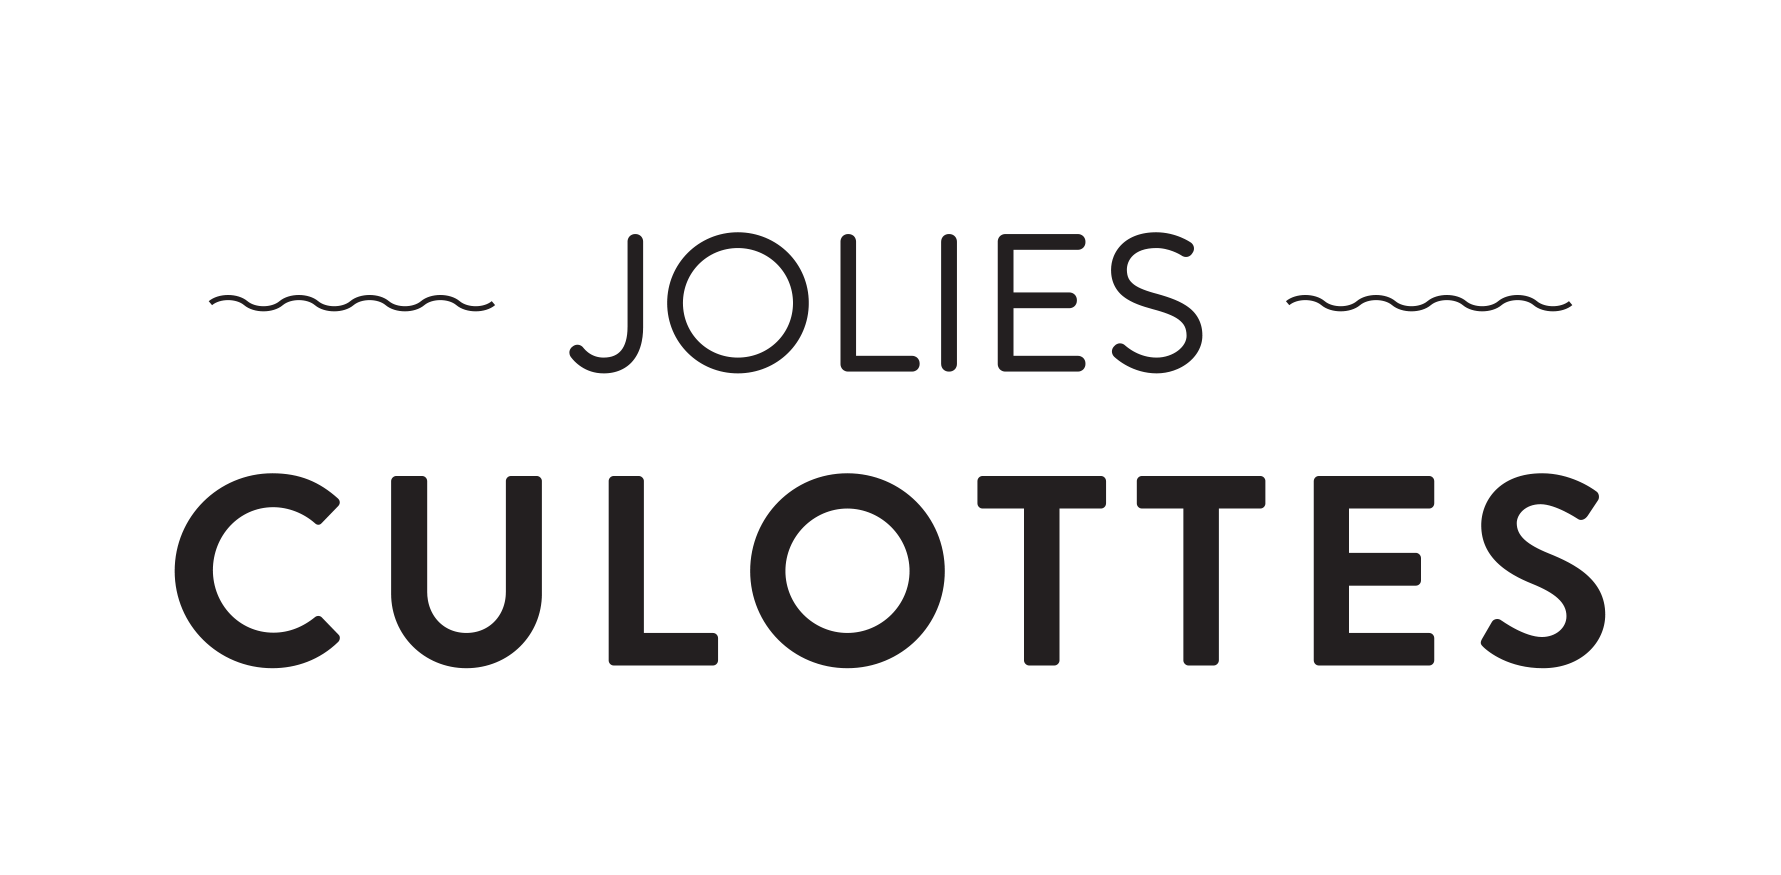 Lire la suite à propos de l’article Aout 2019 : Finance & Technologie co-investit dans la société JoliesCulottes